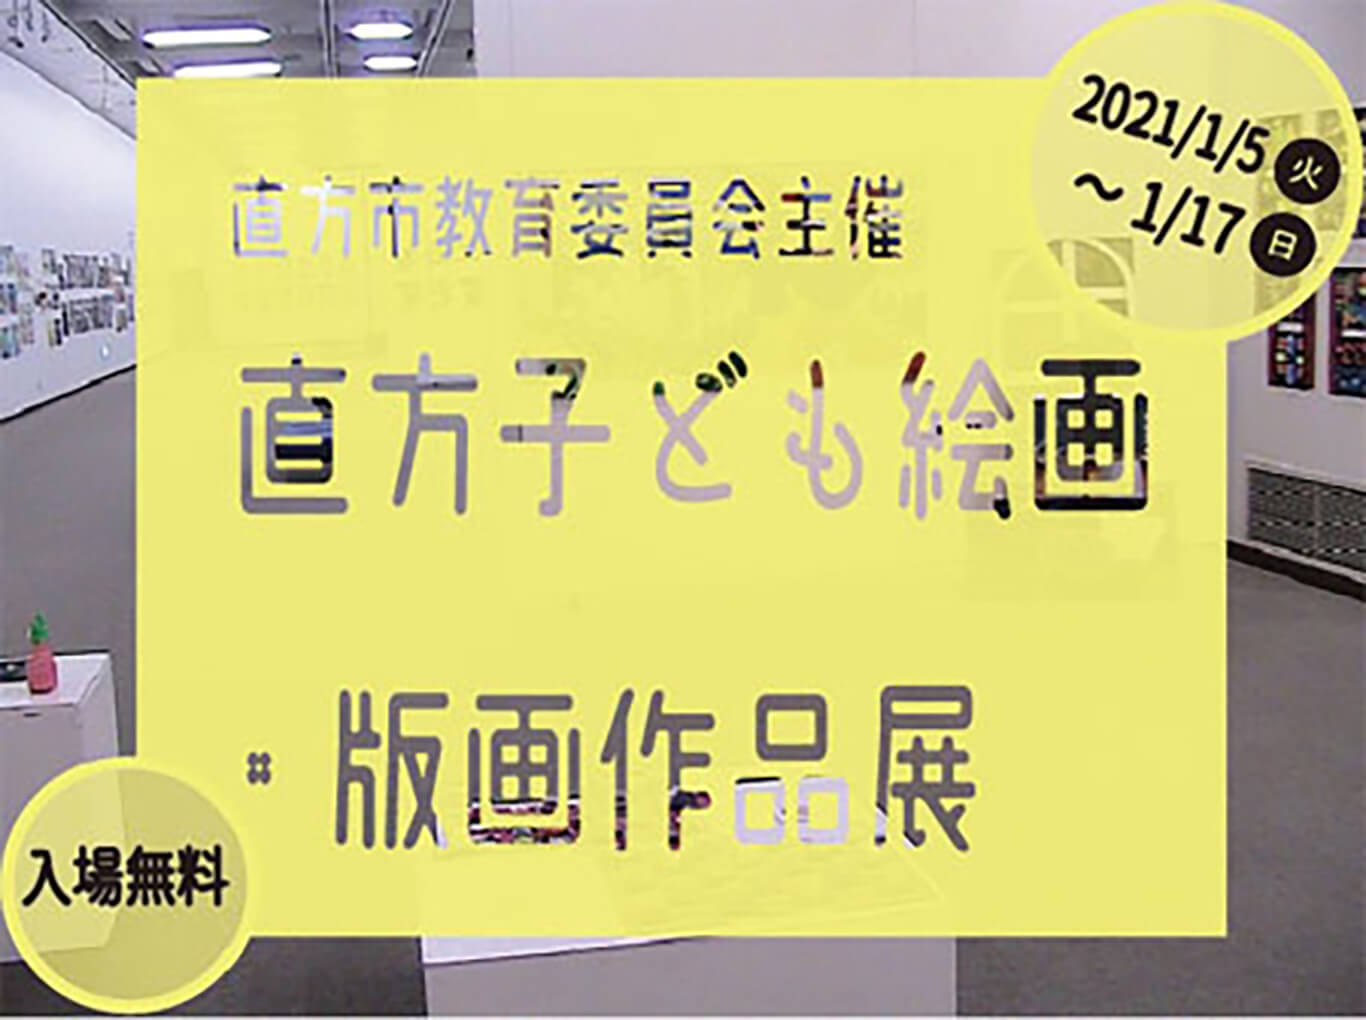 ntam-202101-直方子ども絵画・版画作品展